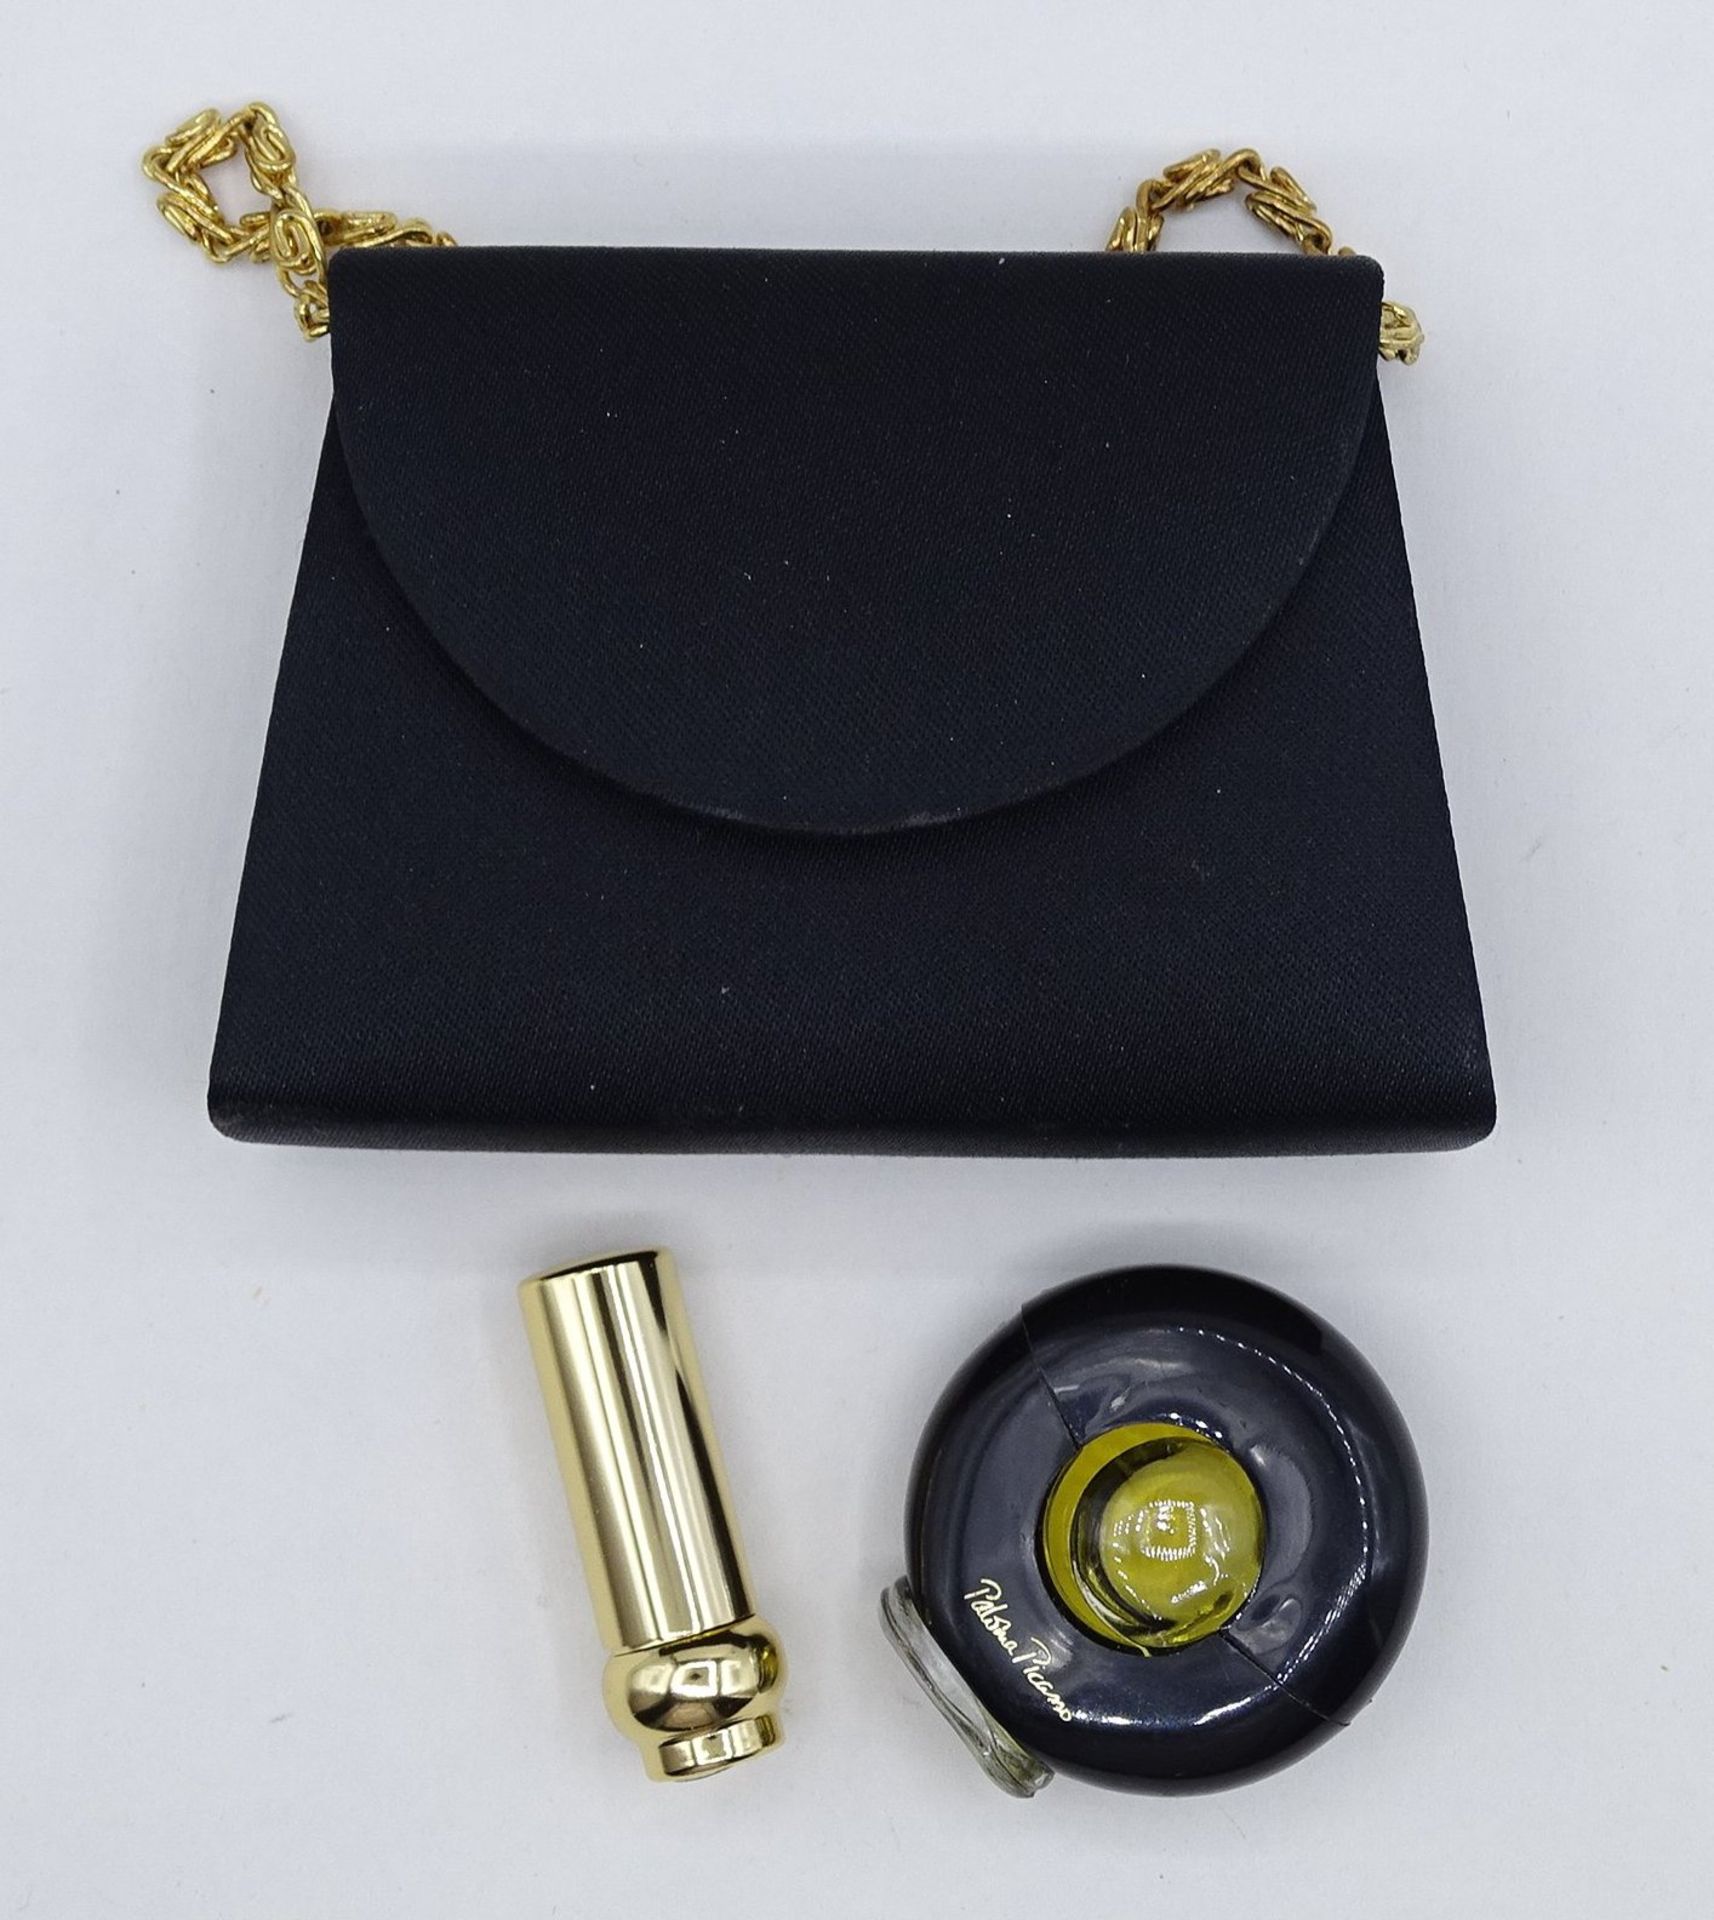 Miniaturhandtasche Paloma Picasso mit Lippenstift und Parfüm, Tasche: 6,5 x 10 x 2,5 cm